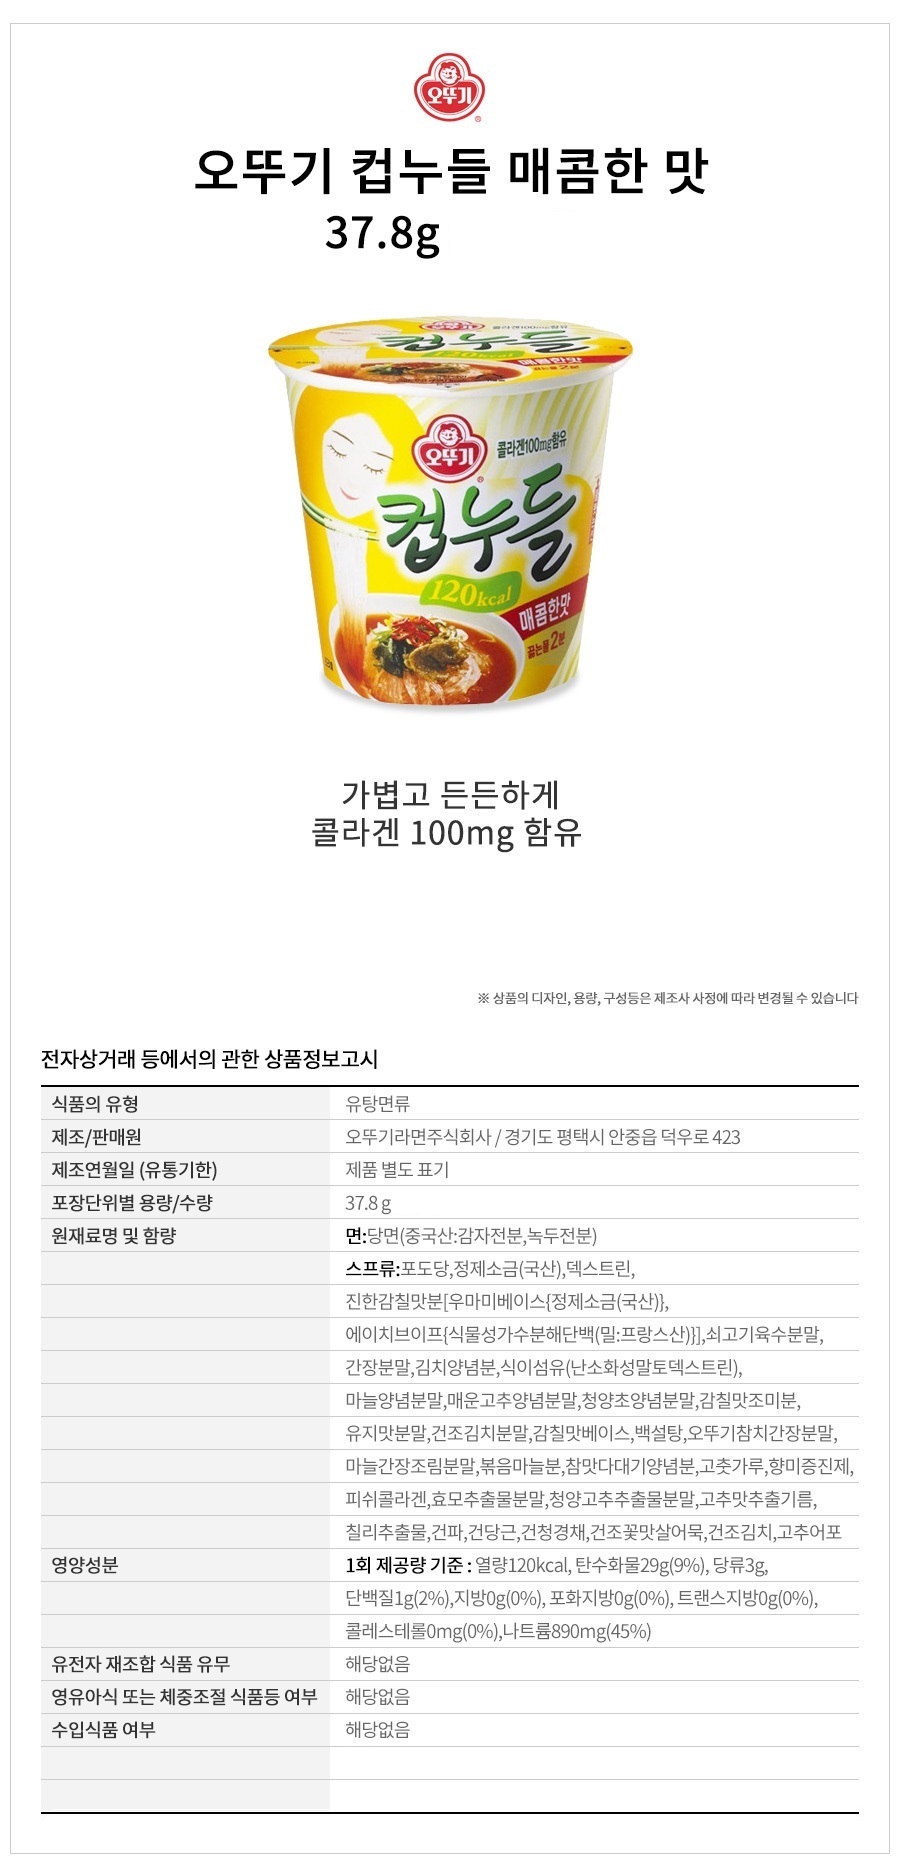 韓國食品-[오뚜기] 컵누들 [매콤한맛] 37.8g 15개